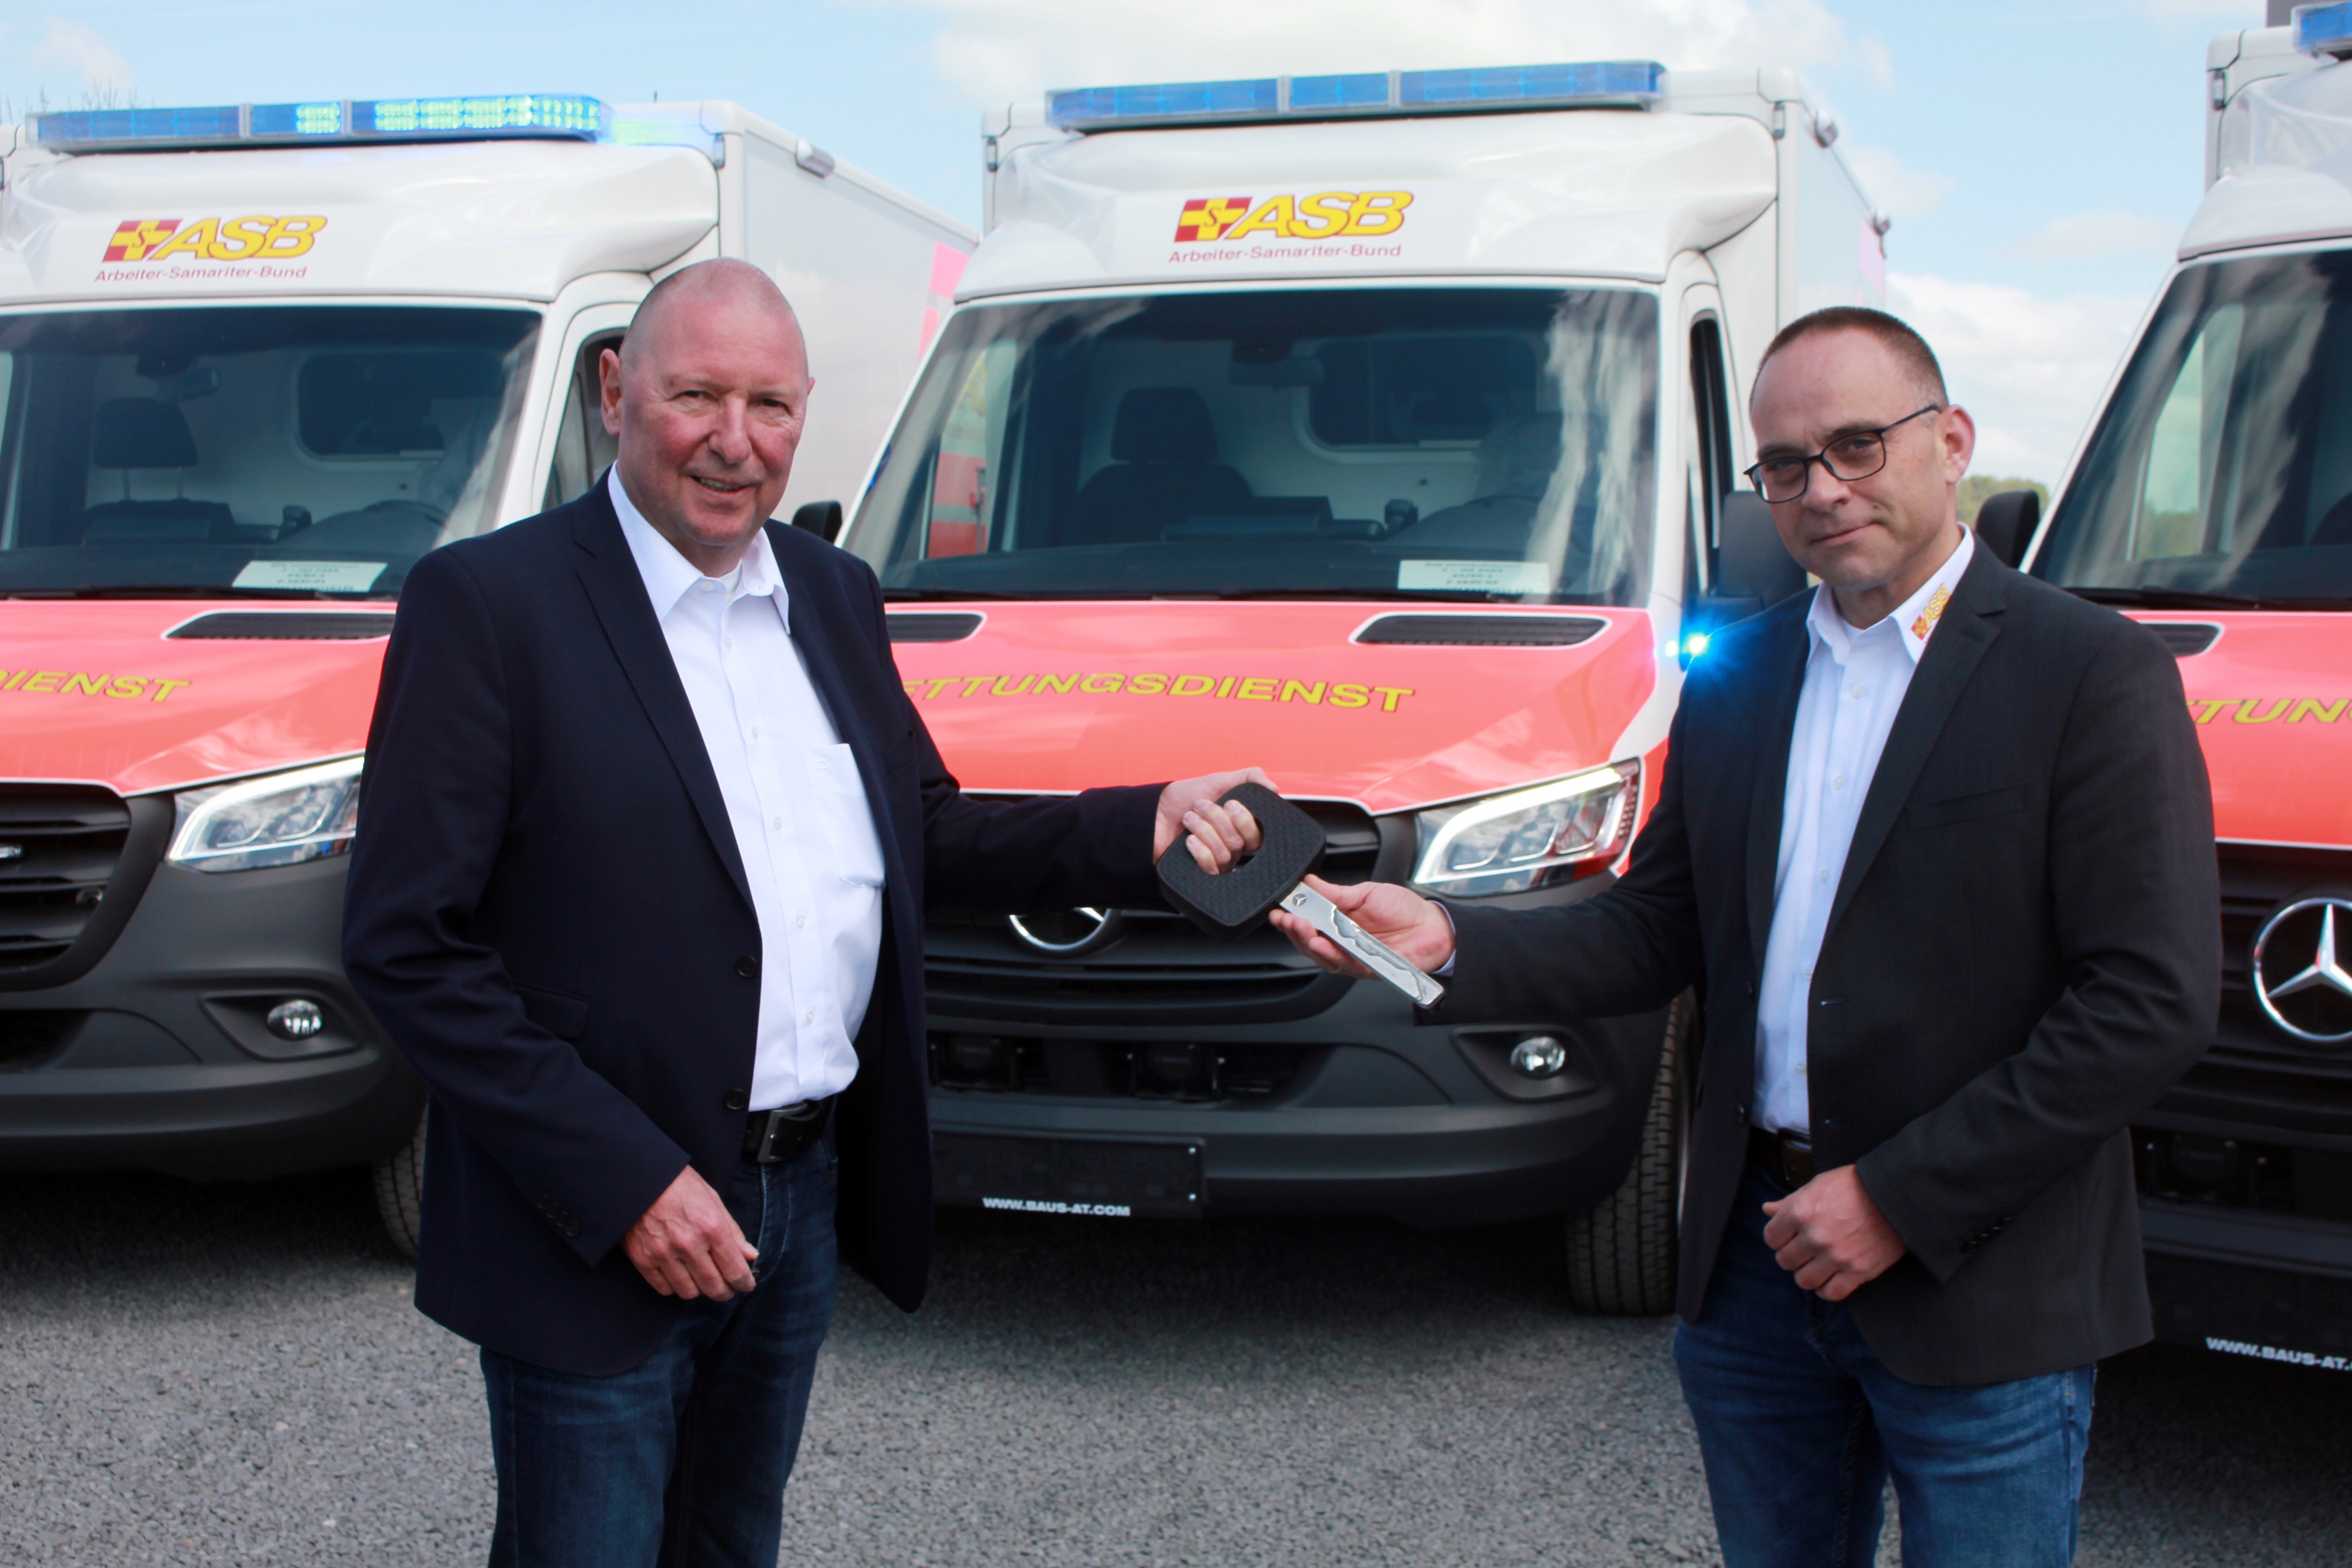 Regionalverband investiert in neue Rettungswagen: Sieben Fahrzeuge gehen an den Start